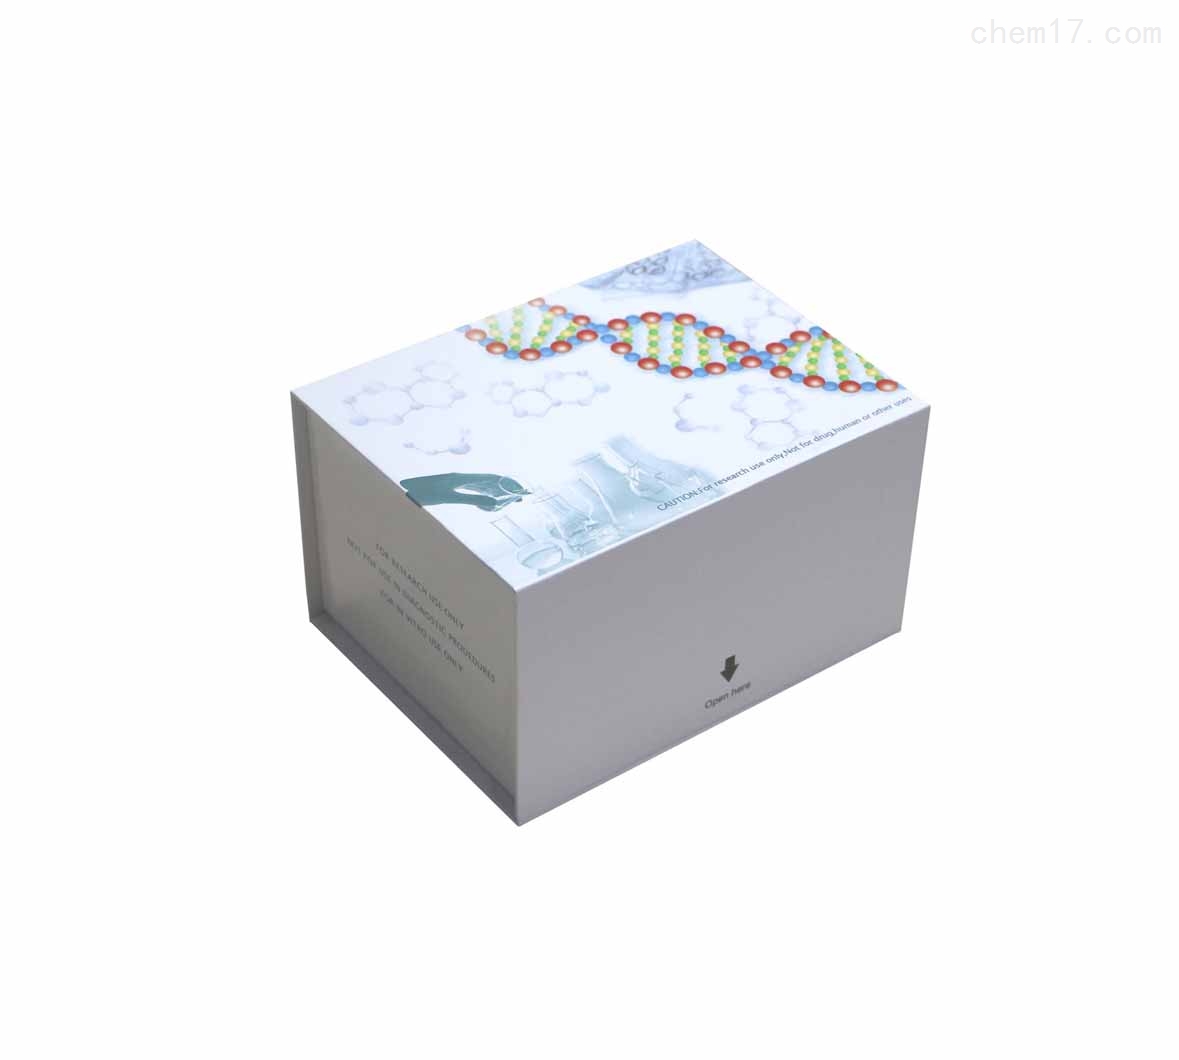 大鼠基质细胞衍生因子1β(SDF-1β/CXCL12)ELISA试剂盒